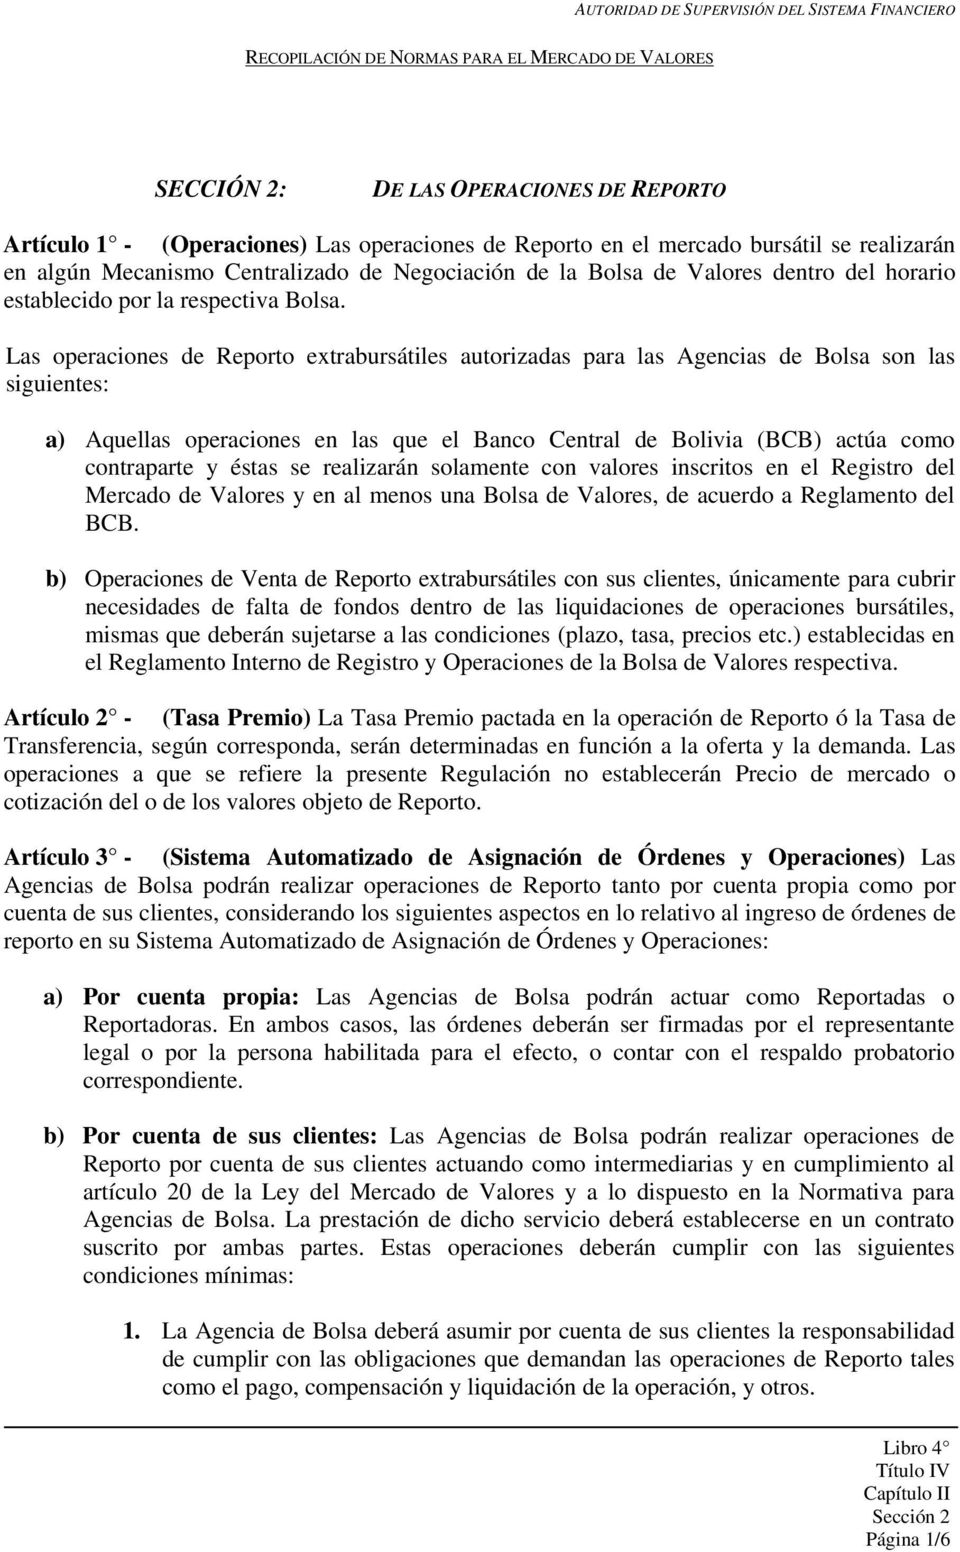 Las operaciones de Reporto extrabursátiles autorizadas para las Agencias de Bolsa son las siguientes: a) Aquellas operaciones en las que el Banco Central de Bolivia (BCB) actúa como contraparte y